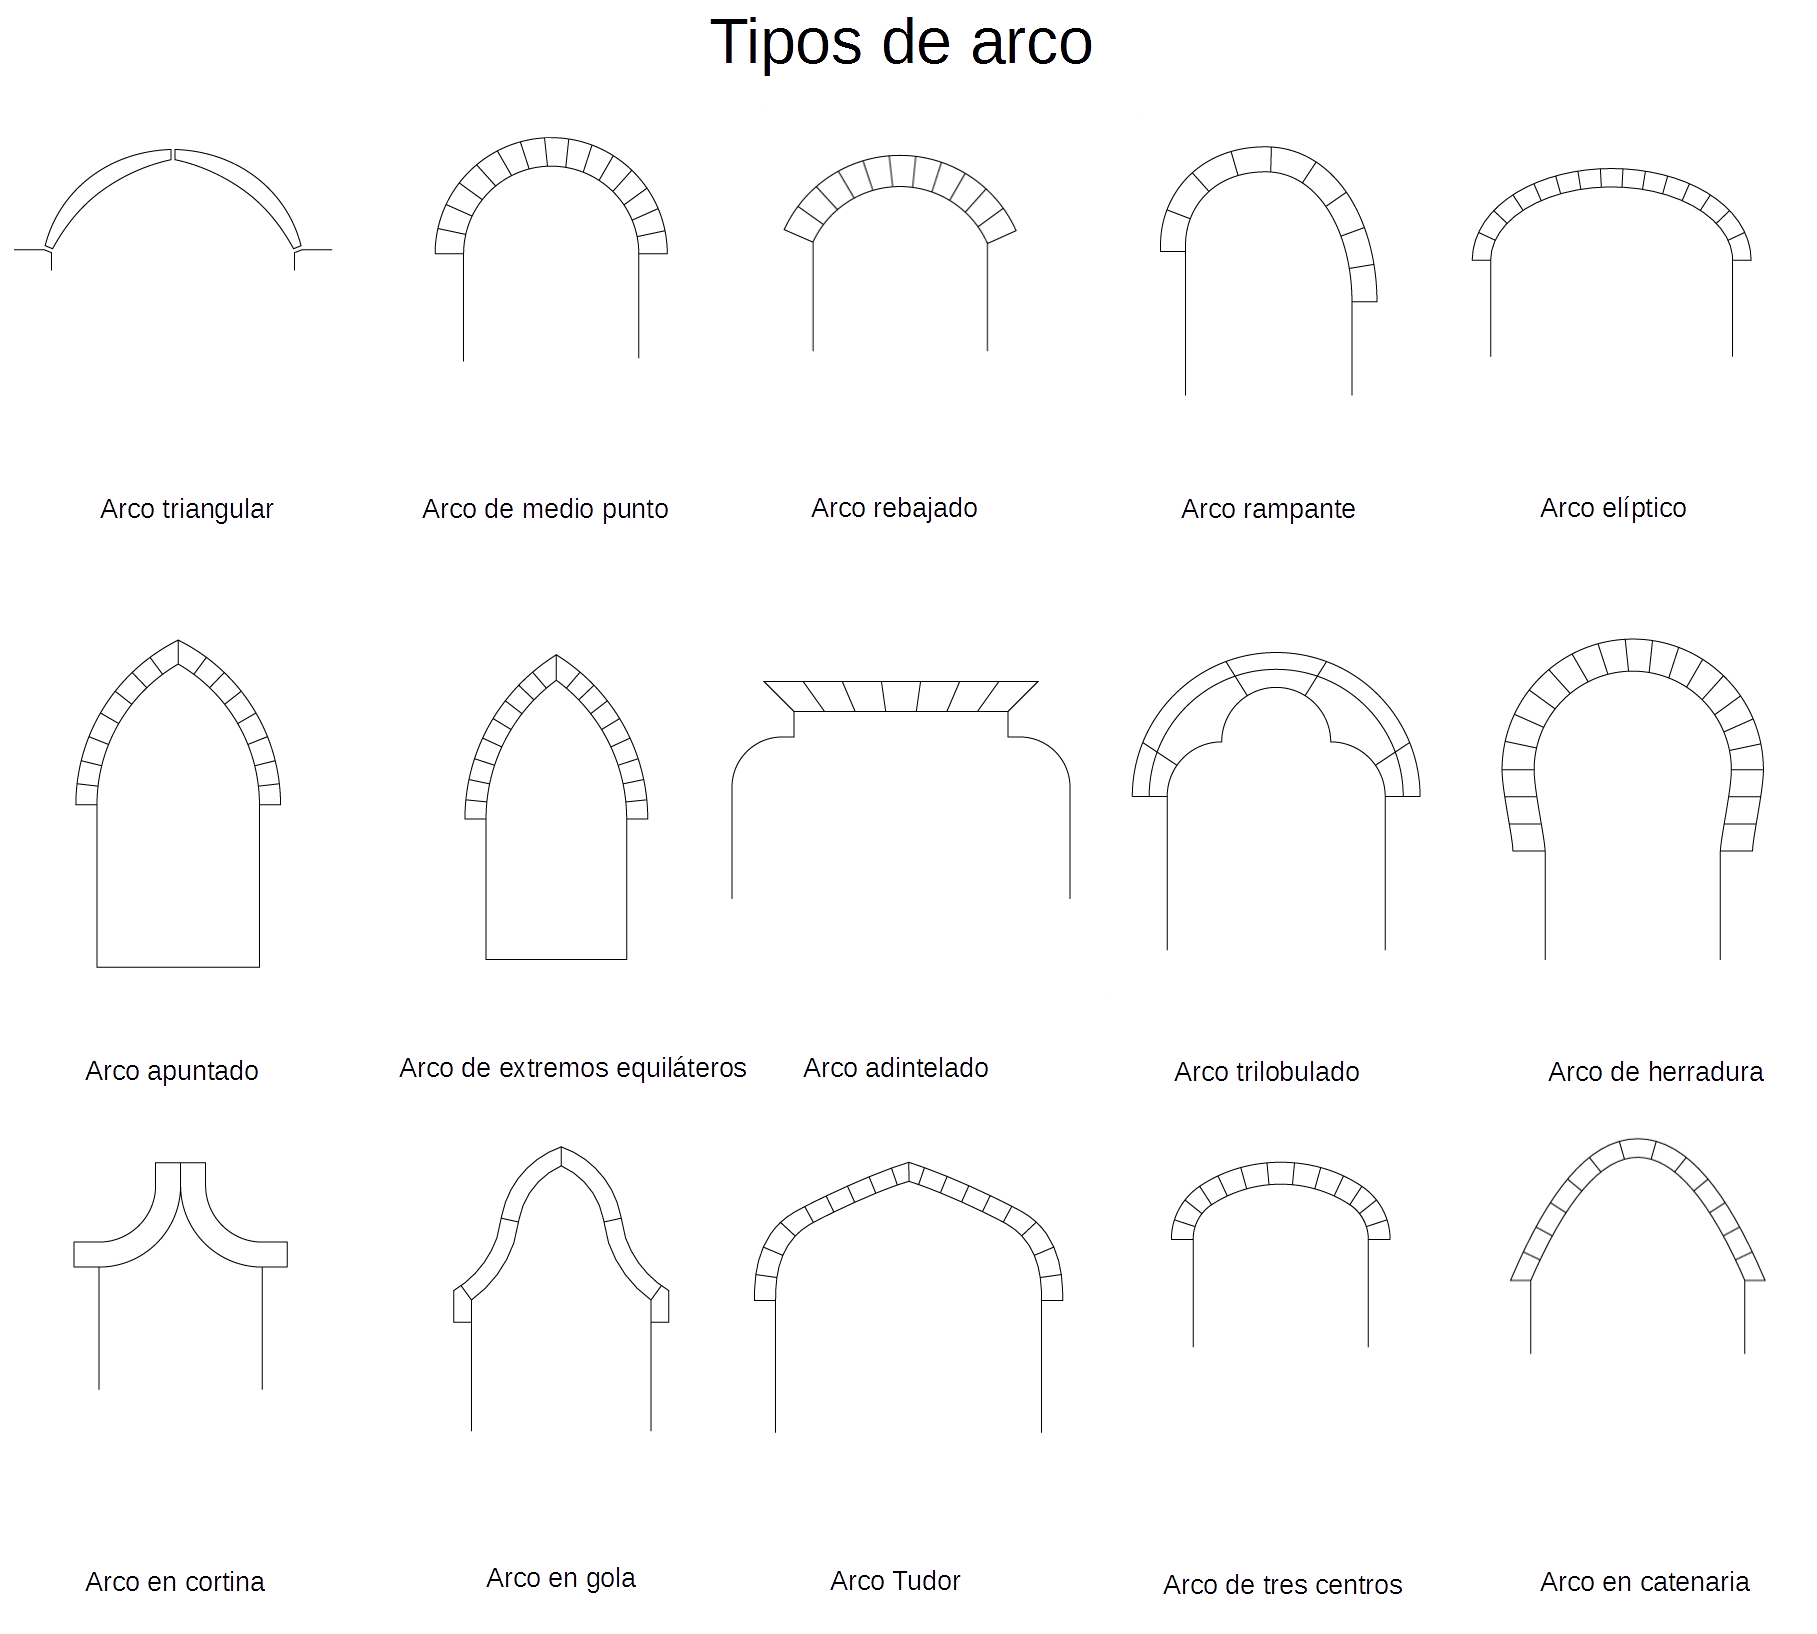 Montaje con dibujos de los diferentes tipos de arcos en función de su geometría.